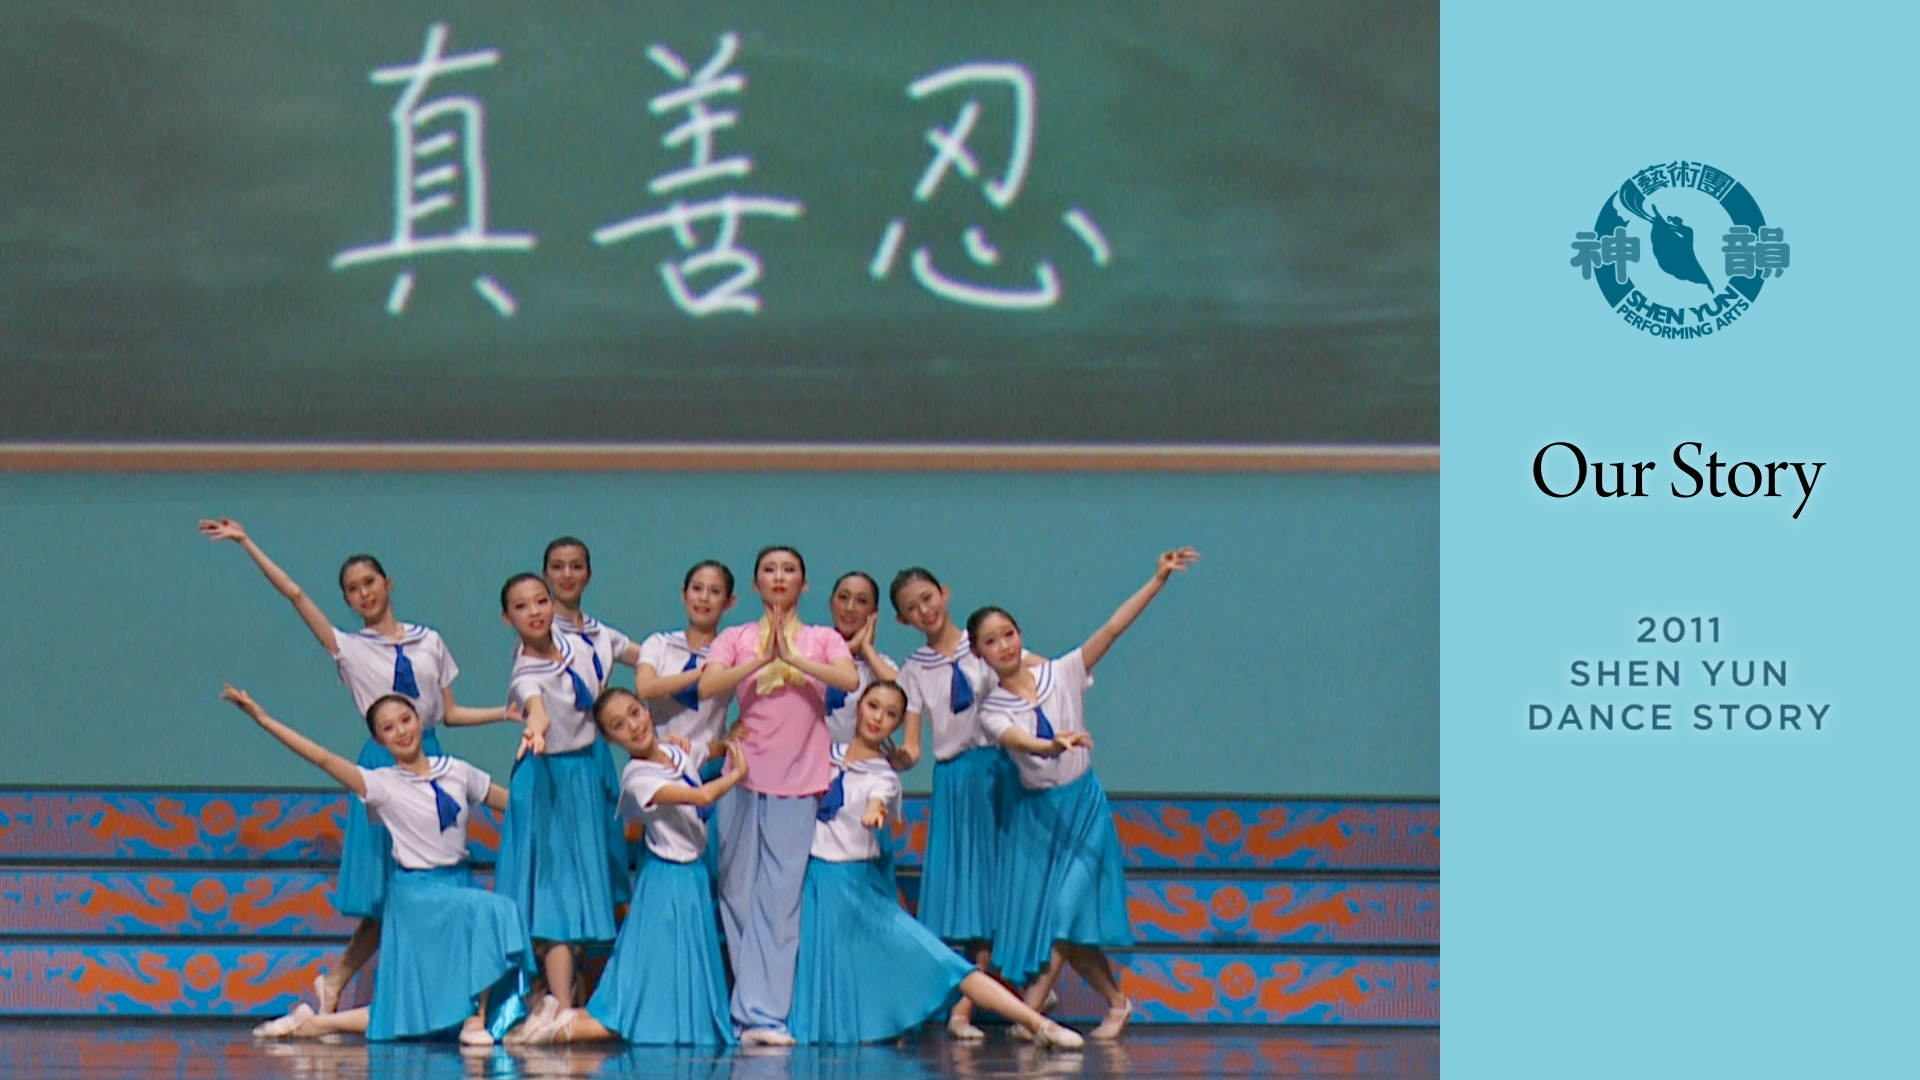 Tác phẩm Shen Yun thời đầu: Câu chuyện của chúng tôi (Chương trình năm 2011)